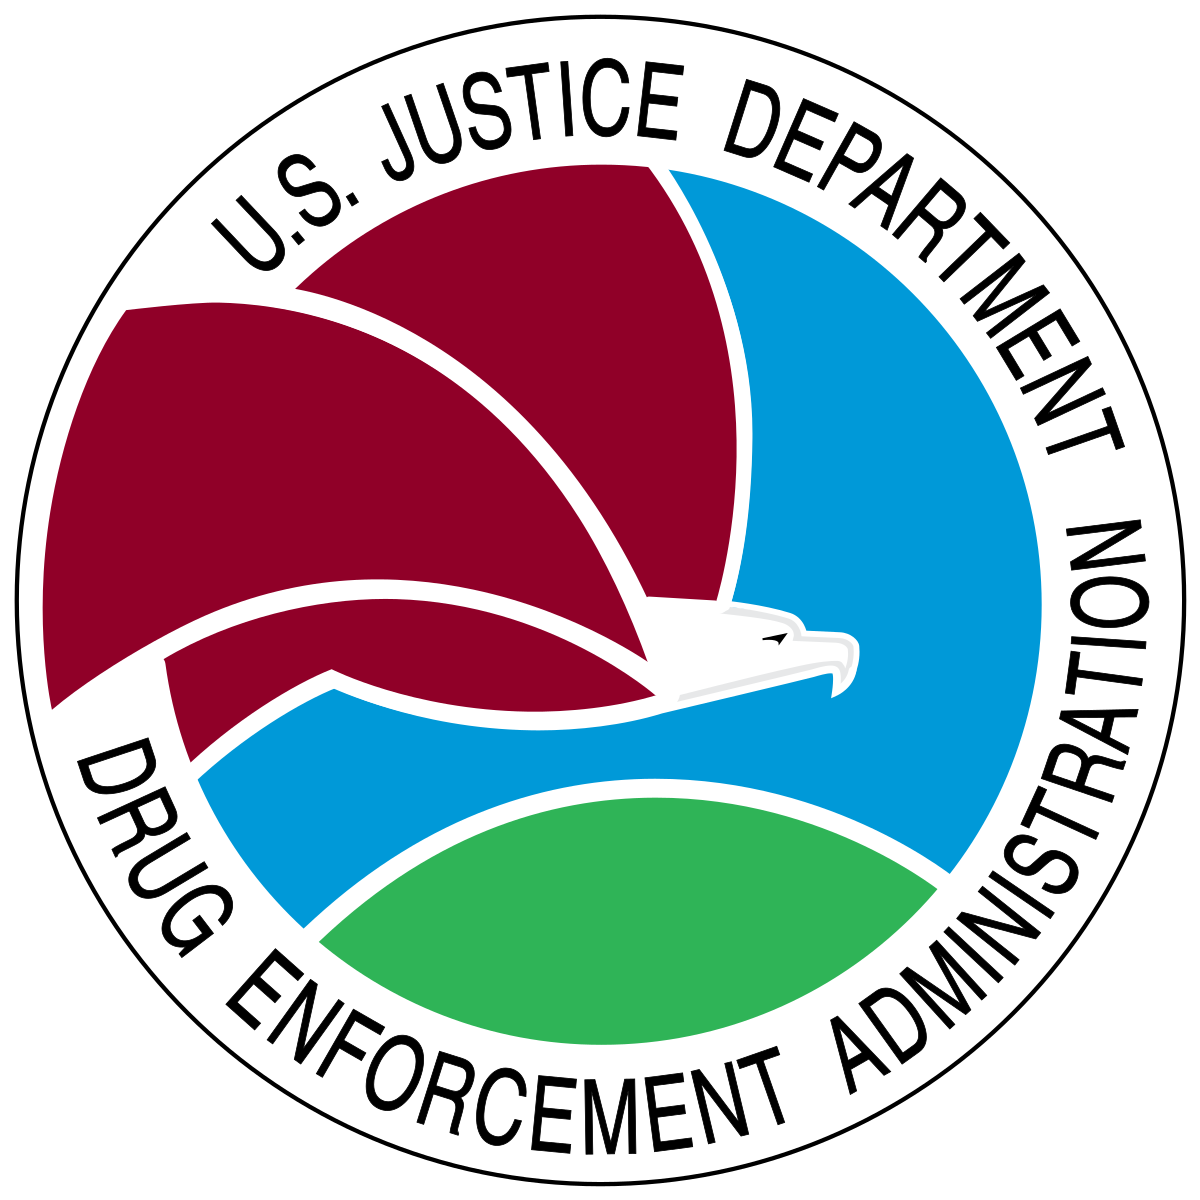 Logo DEA